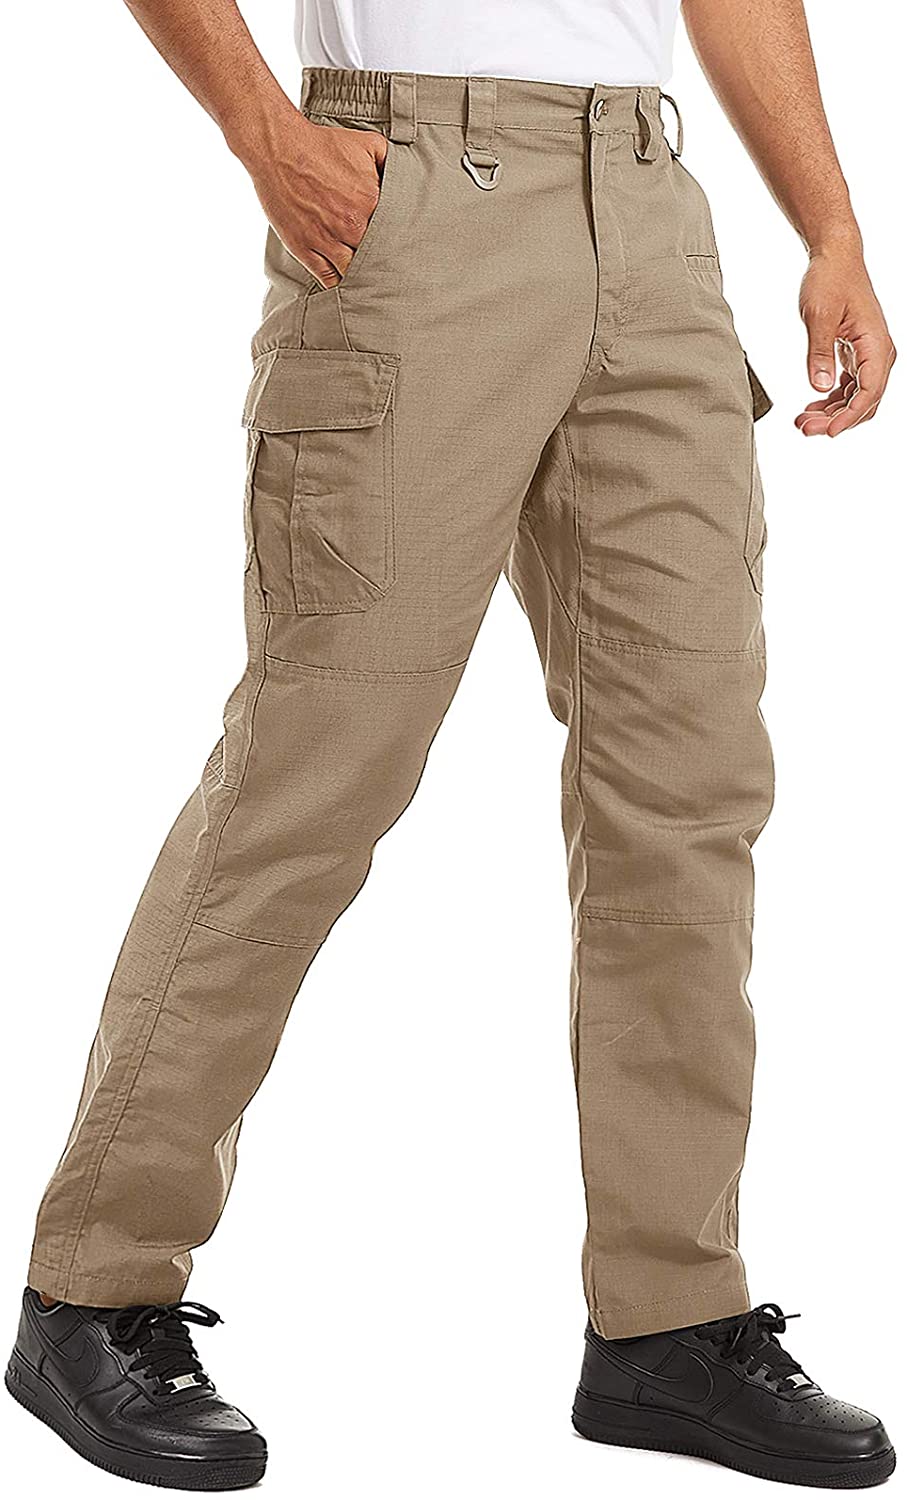 TACVASEN Men's Tactical Cargo Pants Outdoor Sport Military Ripstop Pants 